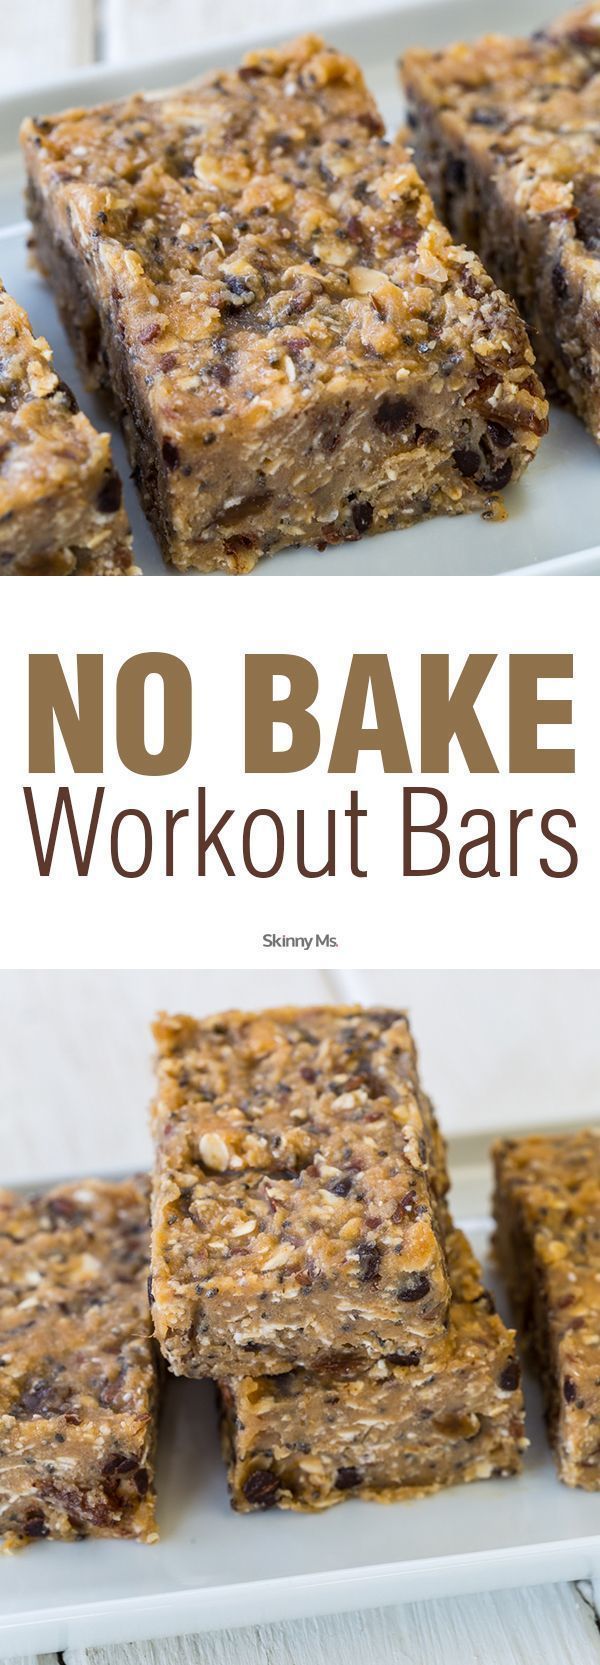 No-Bake Workout Bars